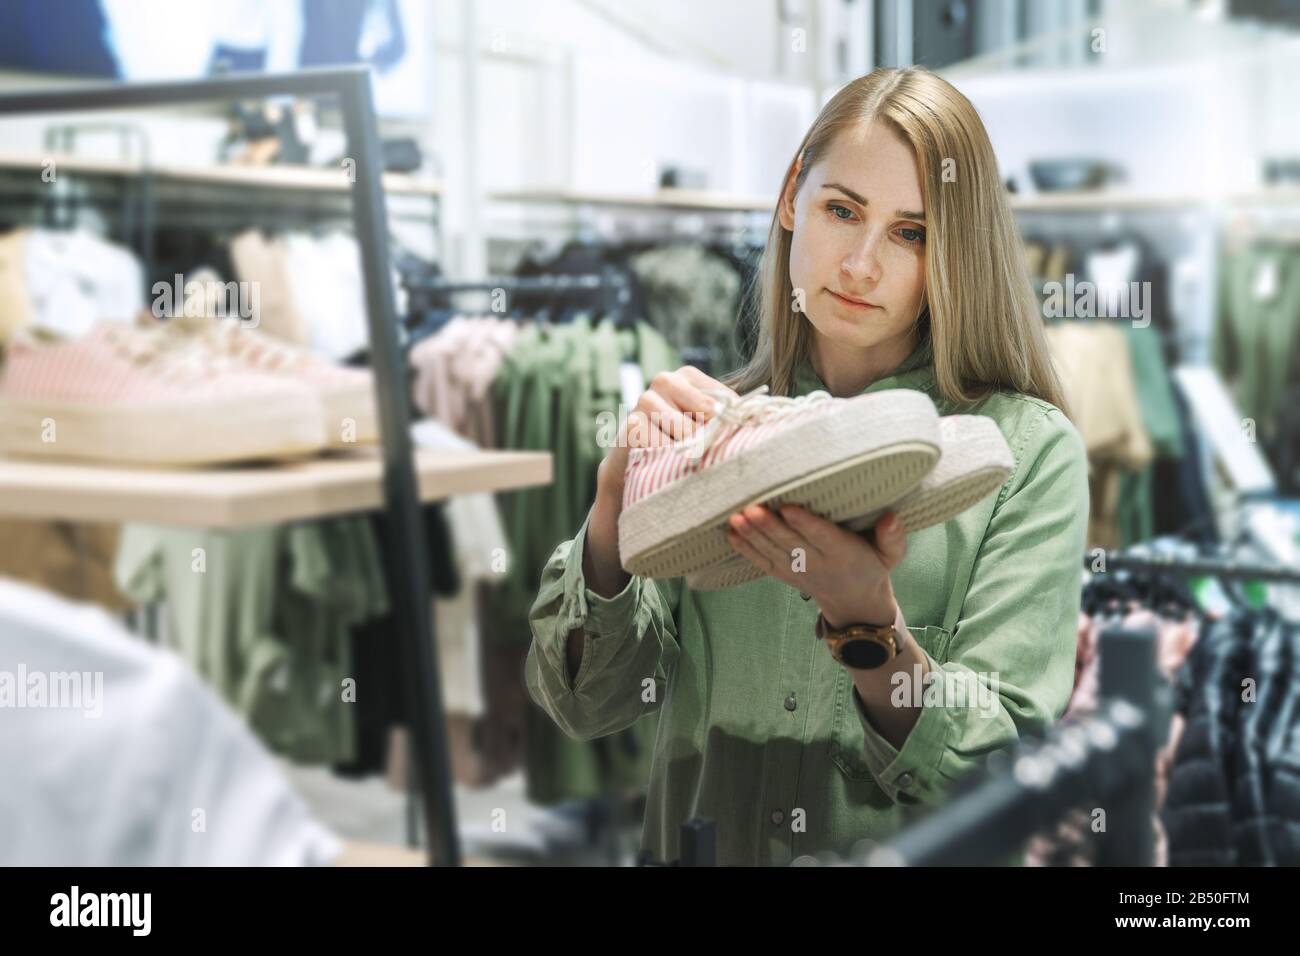 Frau, die im Bekleidungsgeschäft nach neuen Schuhen sucht Stockfoto